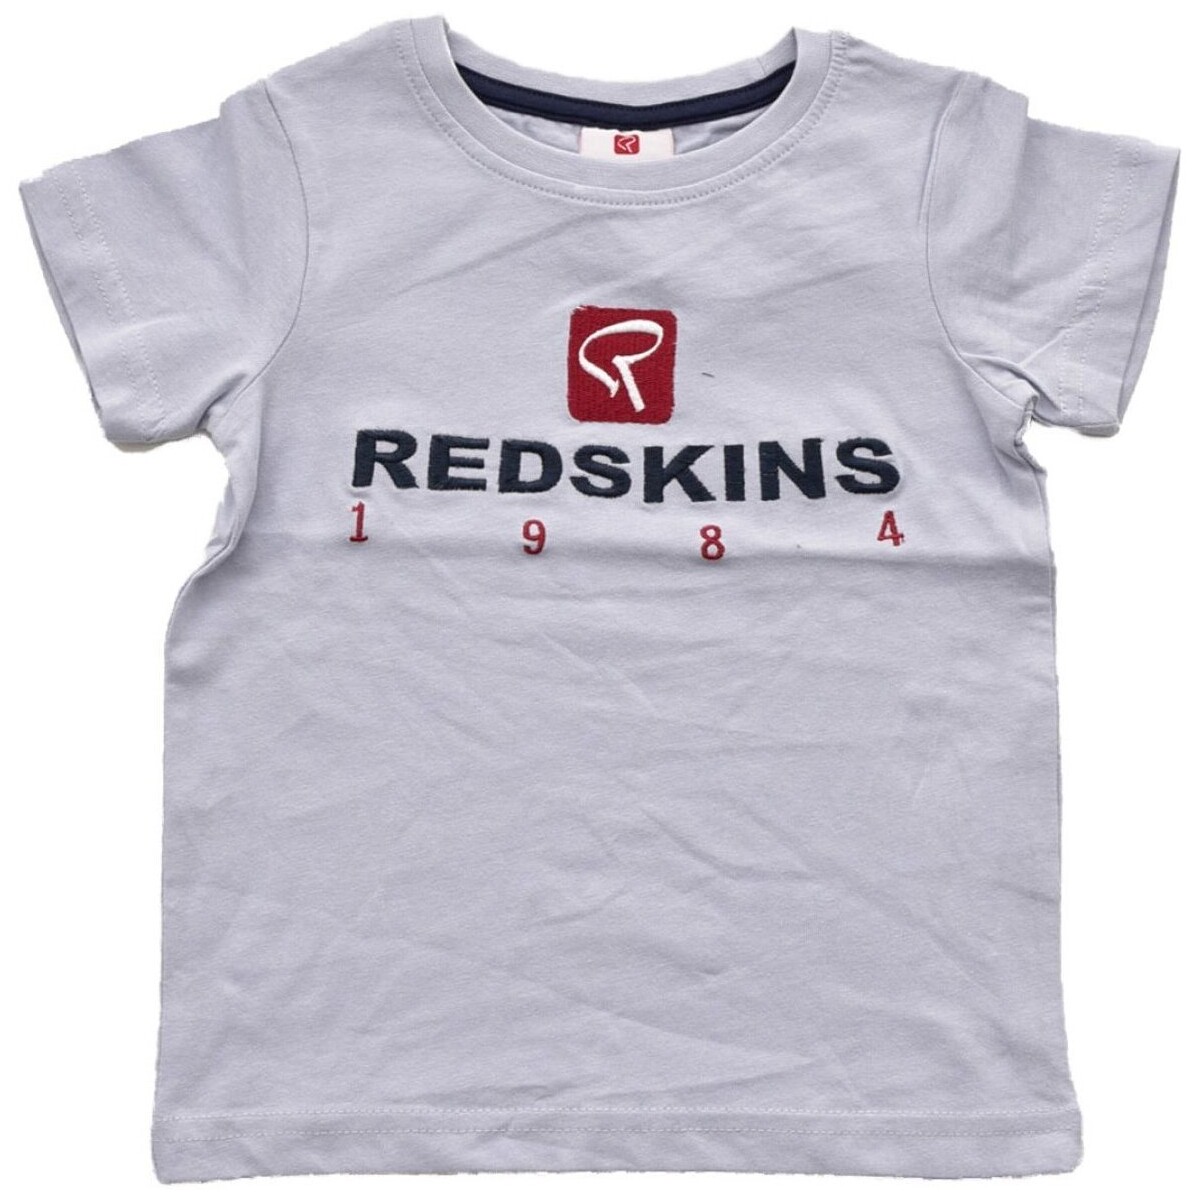 Tshirts Polos Redskins 180100